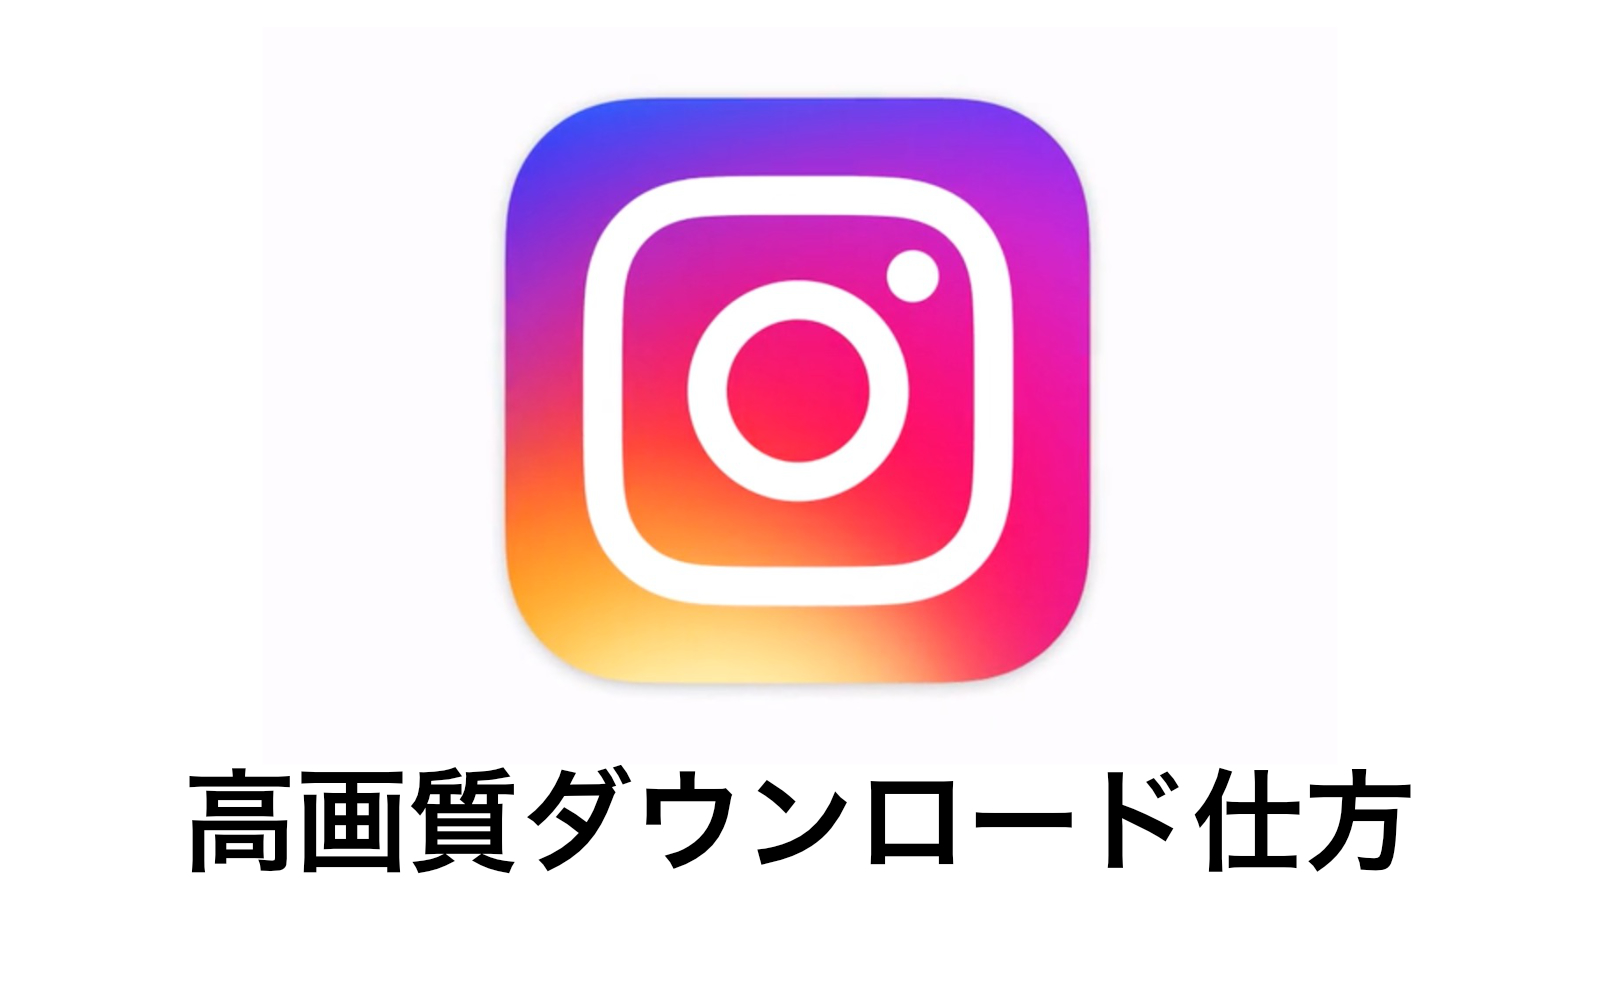 22年版 Instagramの投稿 写真 動画 を高画質で保存する方法を見つけた Wiruのitブログ